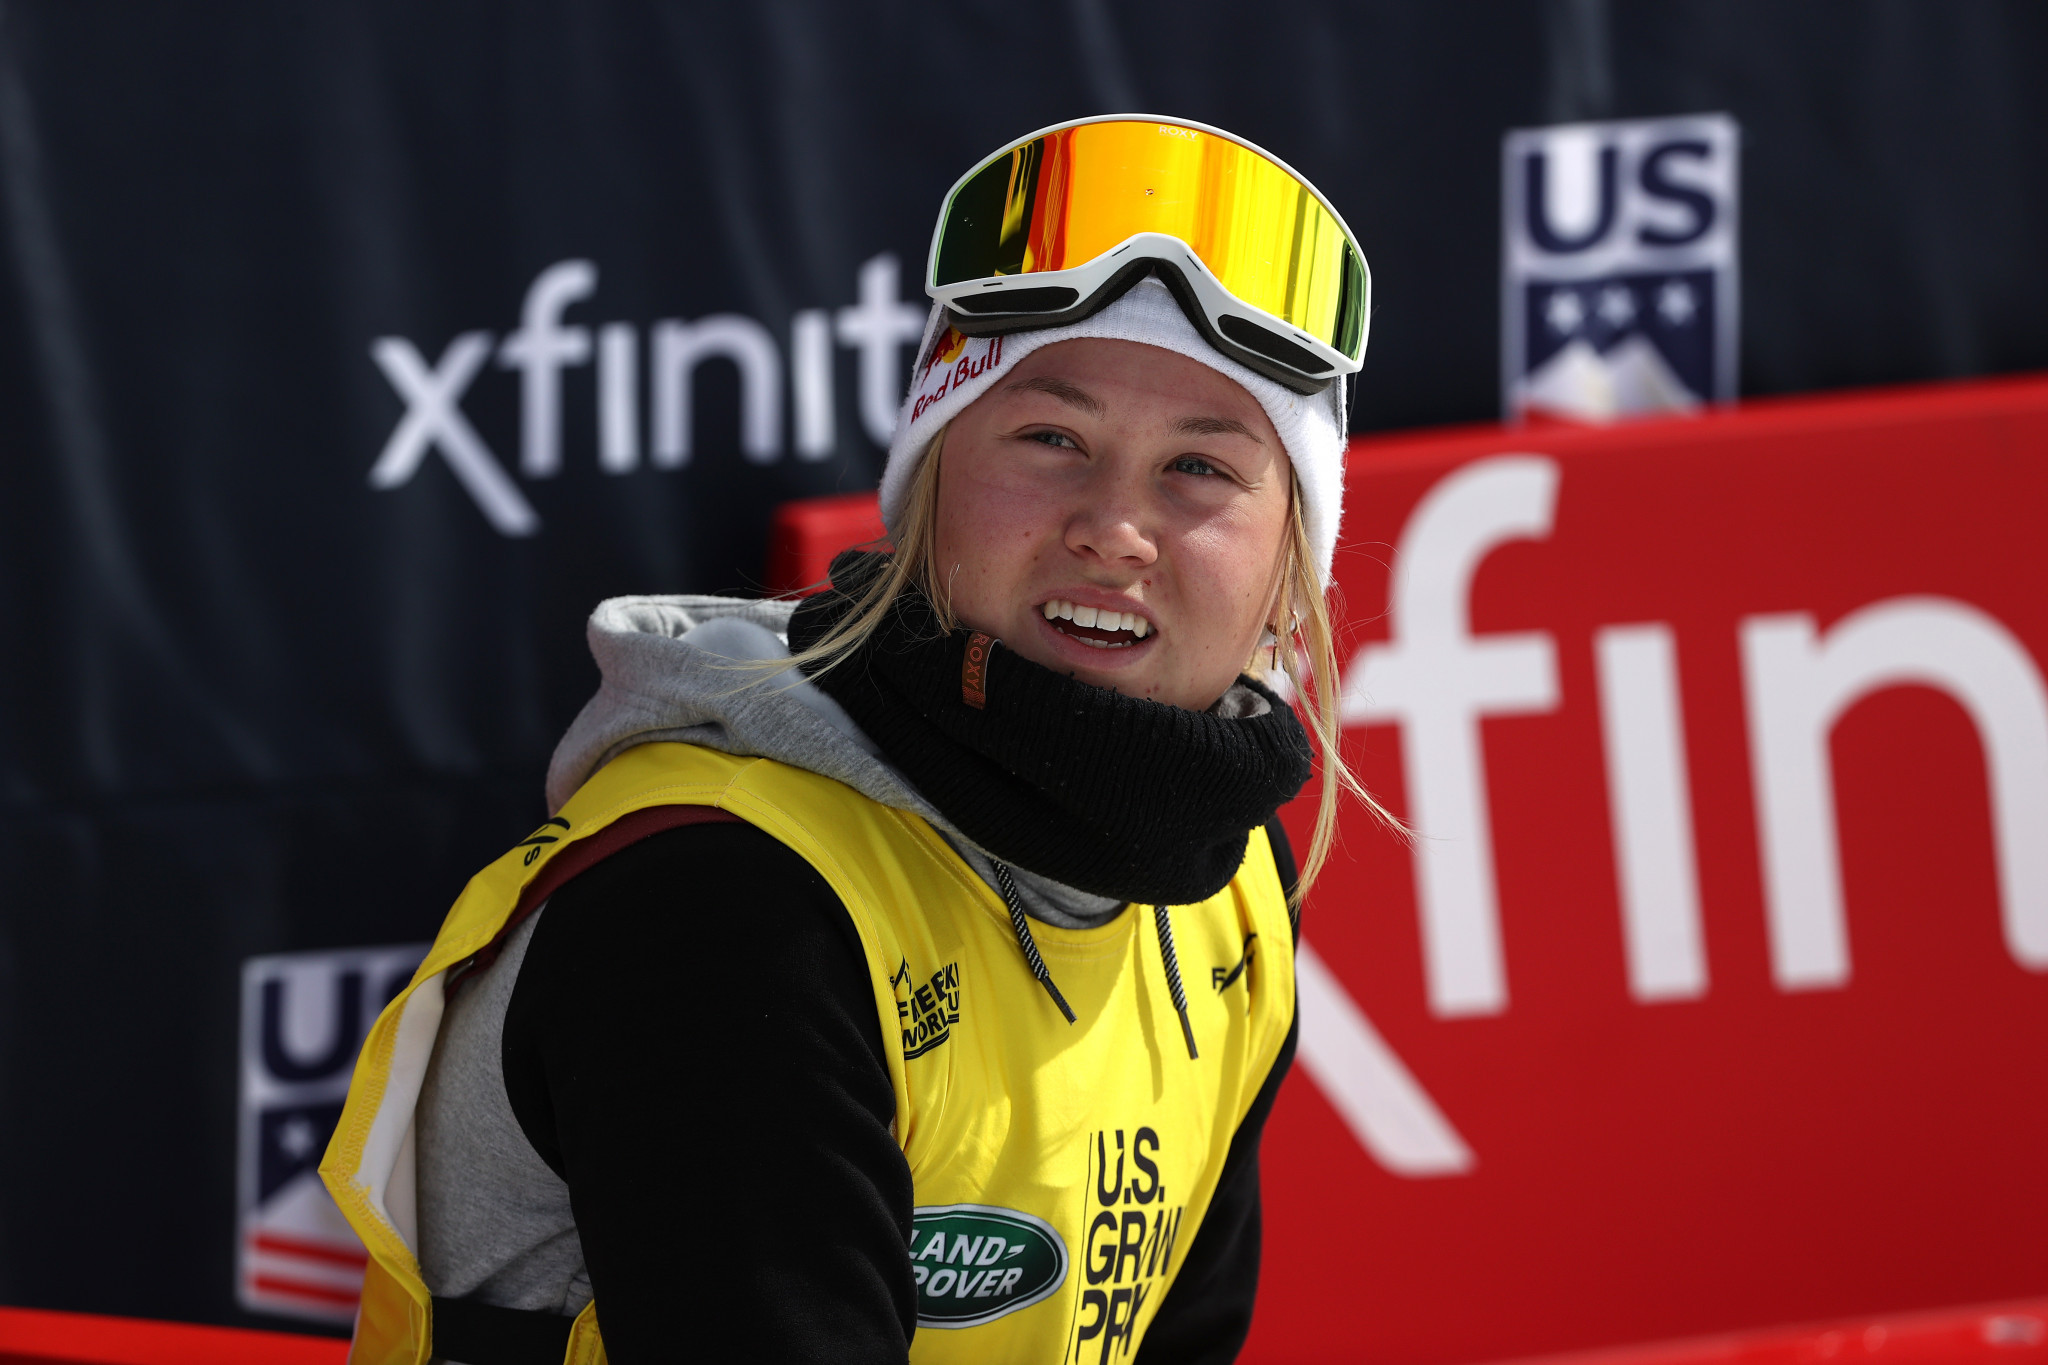 Tess Ledeux a remporté son premier titre de Coupe du monde de slopestyle aujourd'hui à Silvaplana © Getty Images